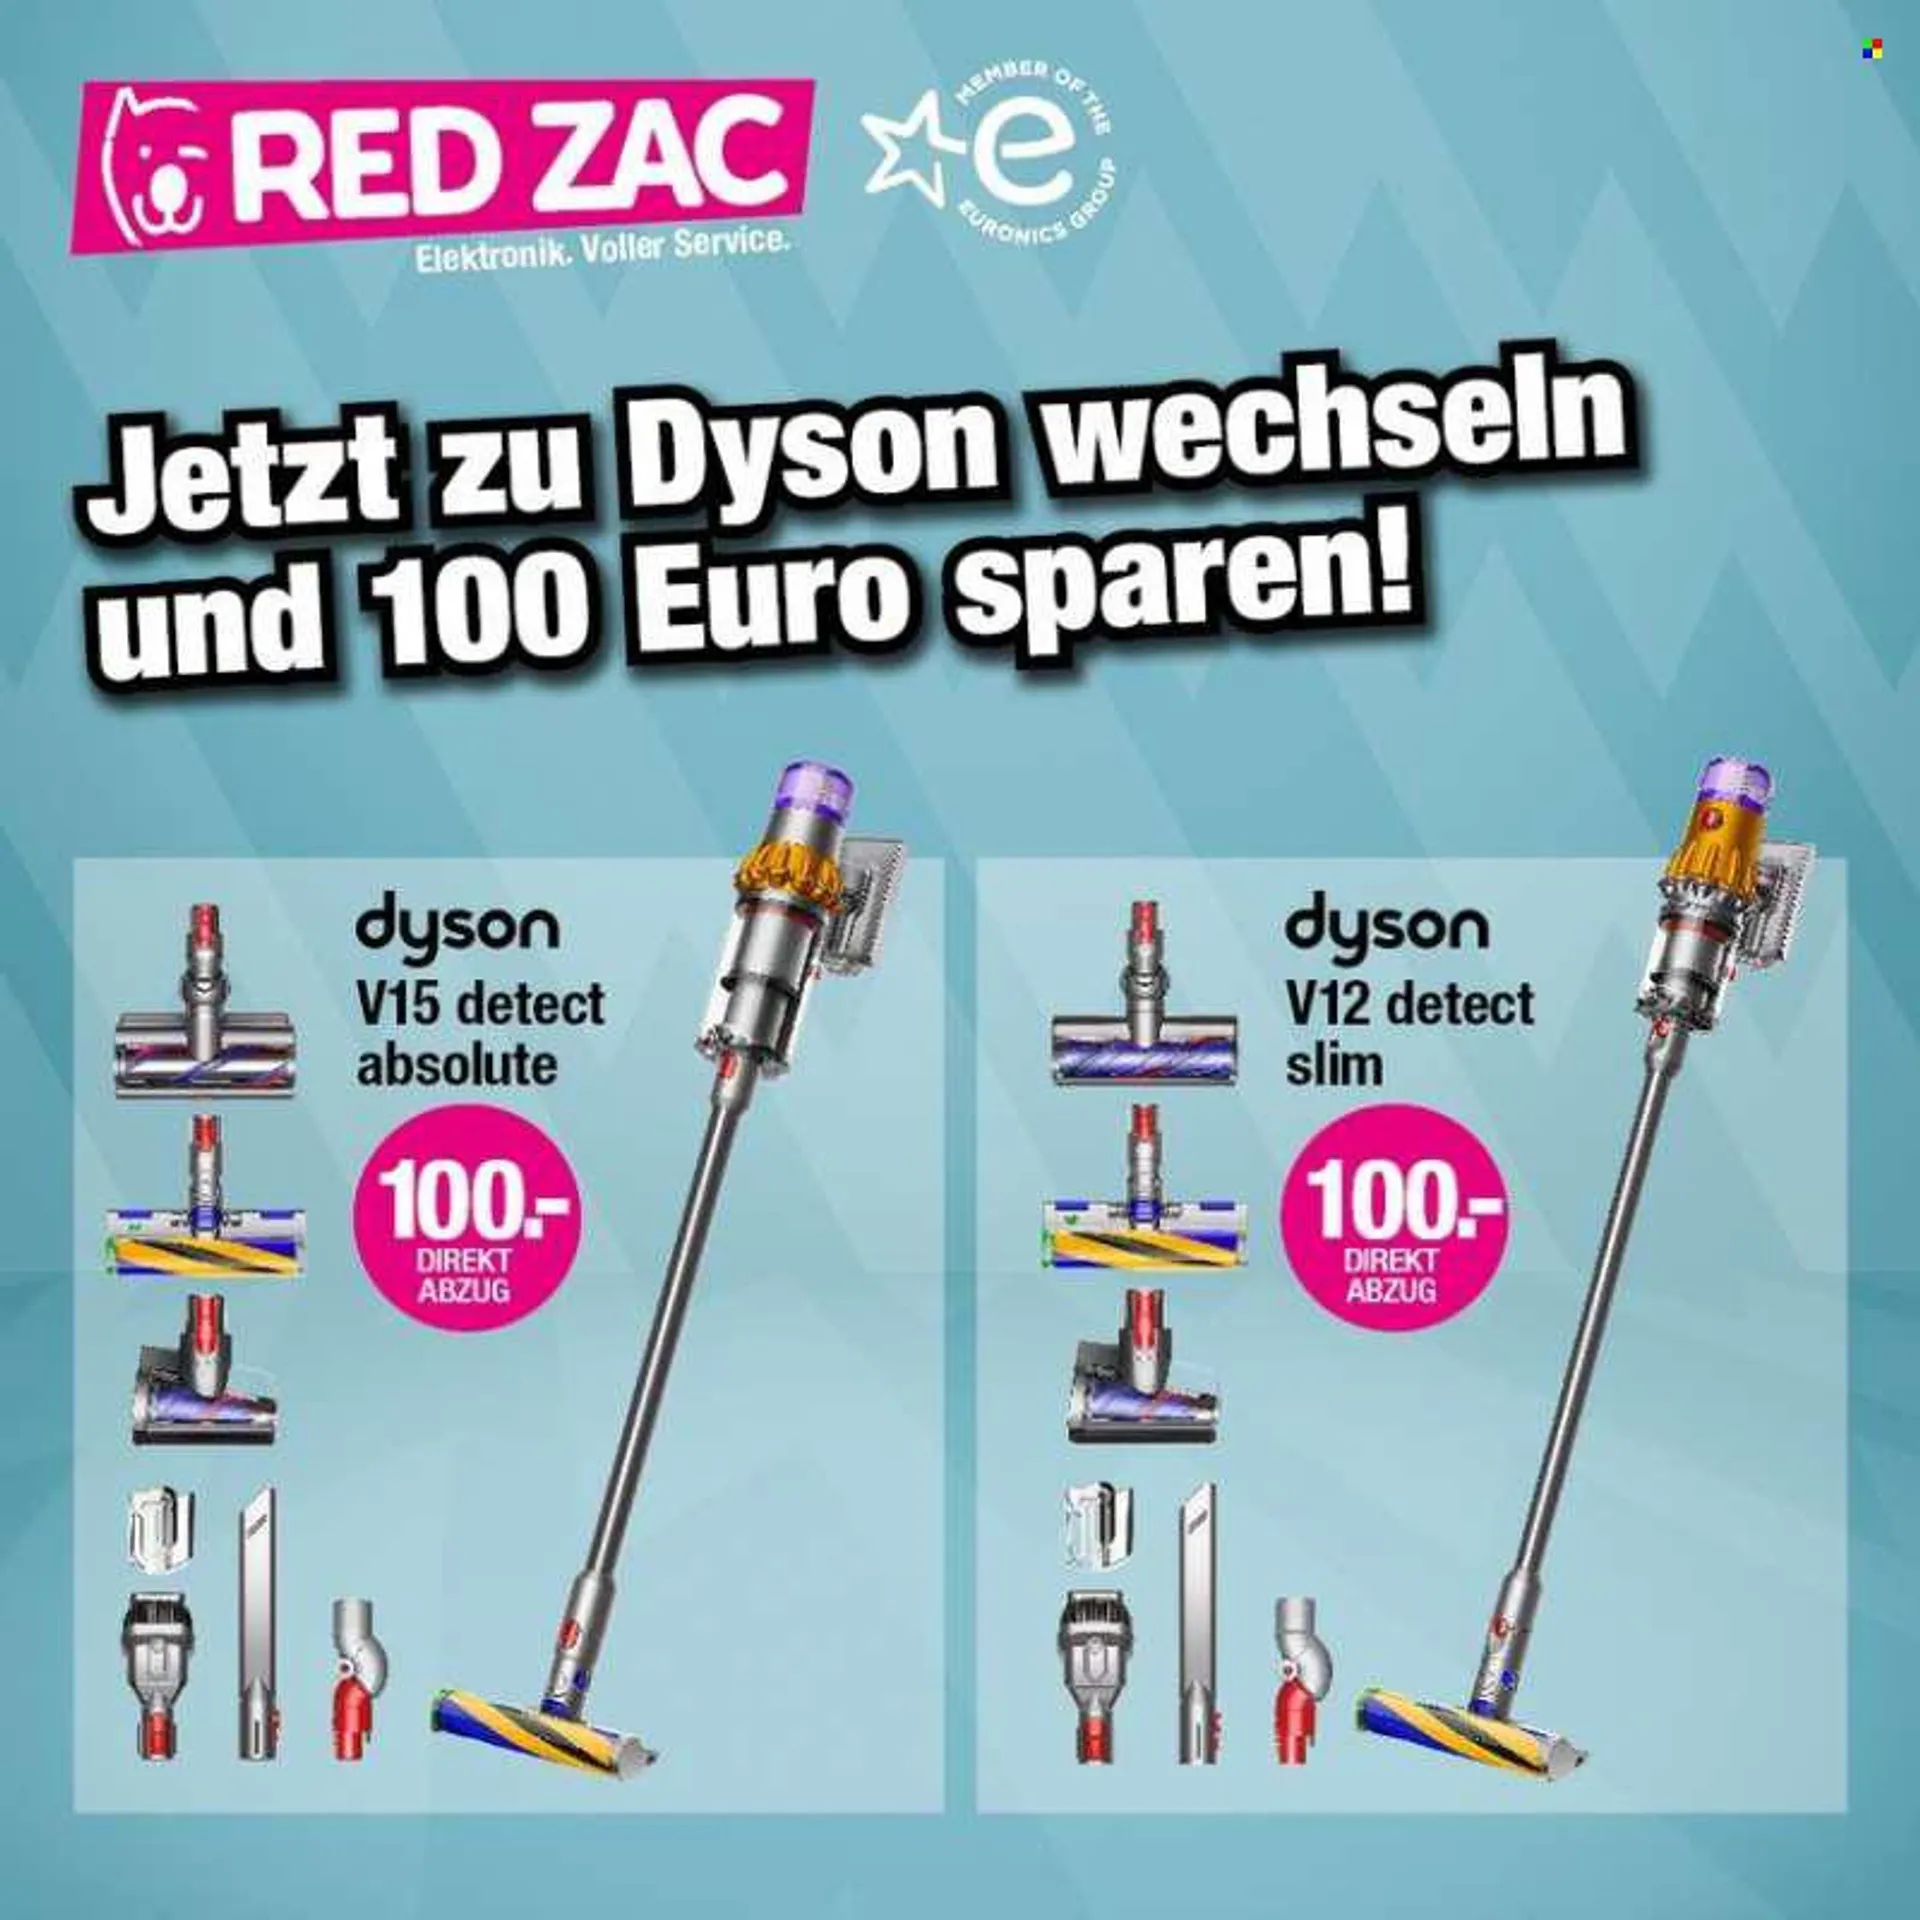 Angebote RED ZAC - Verkaufsprodukte - Dyson. Seite 1.